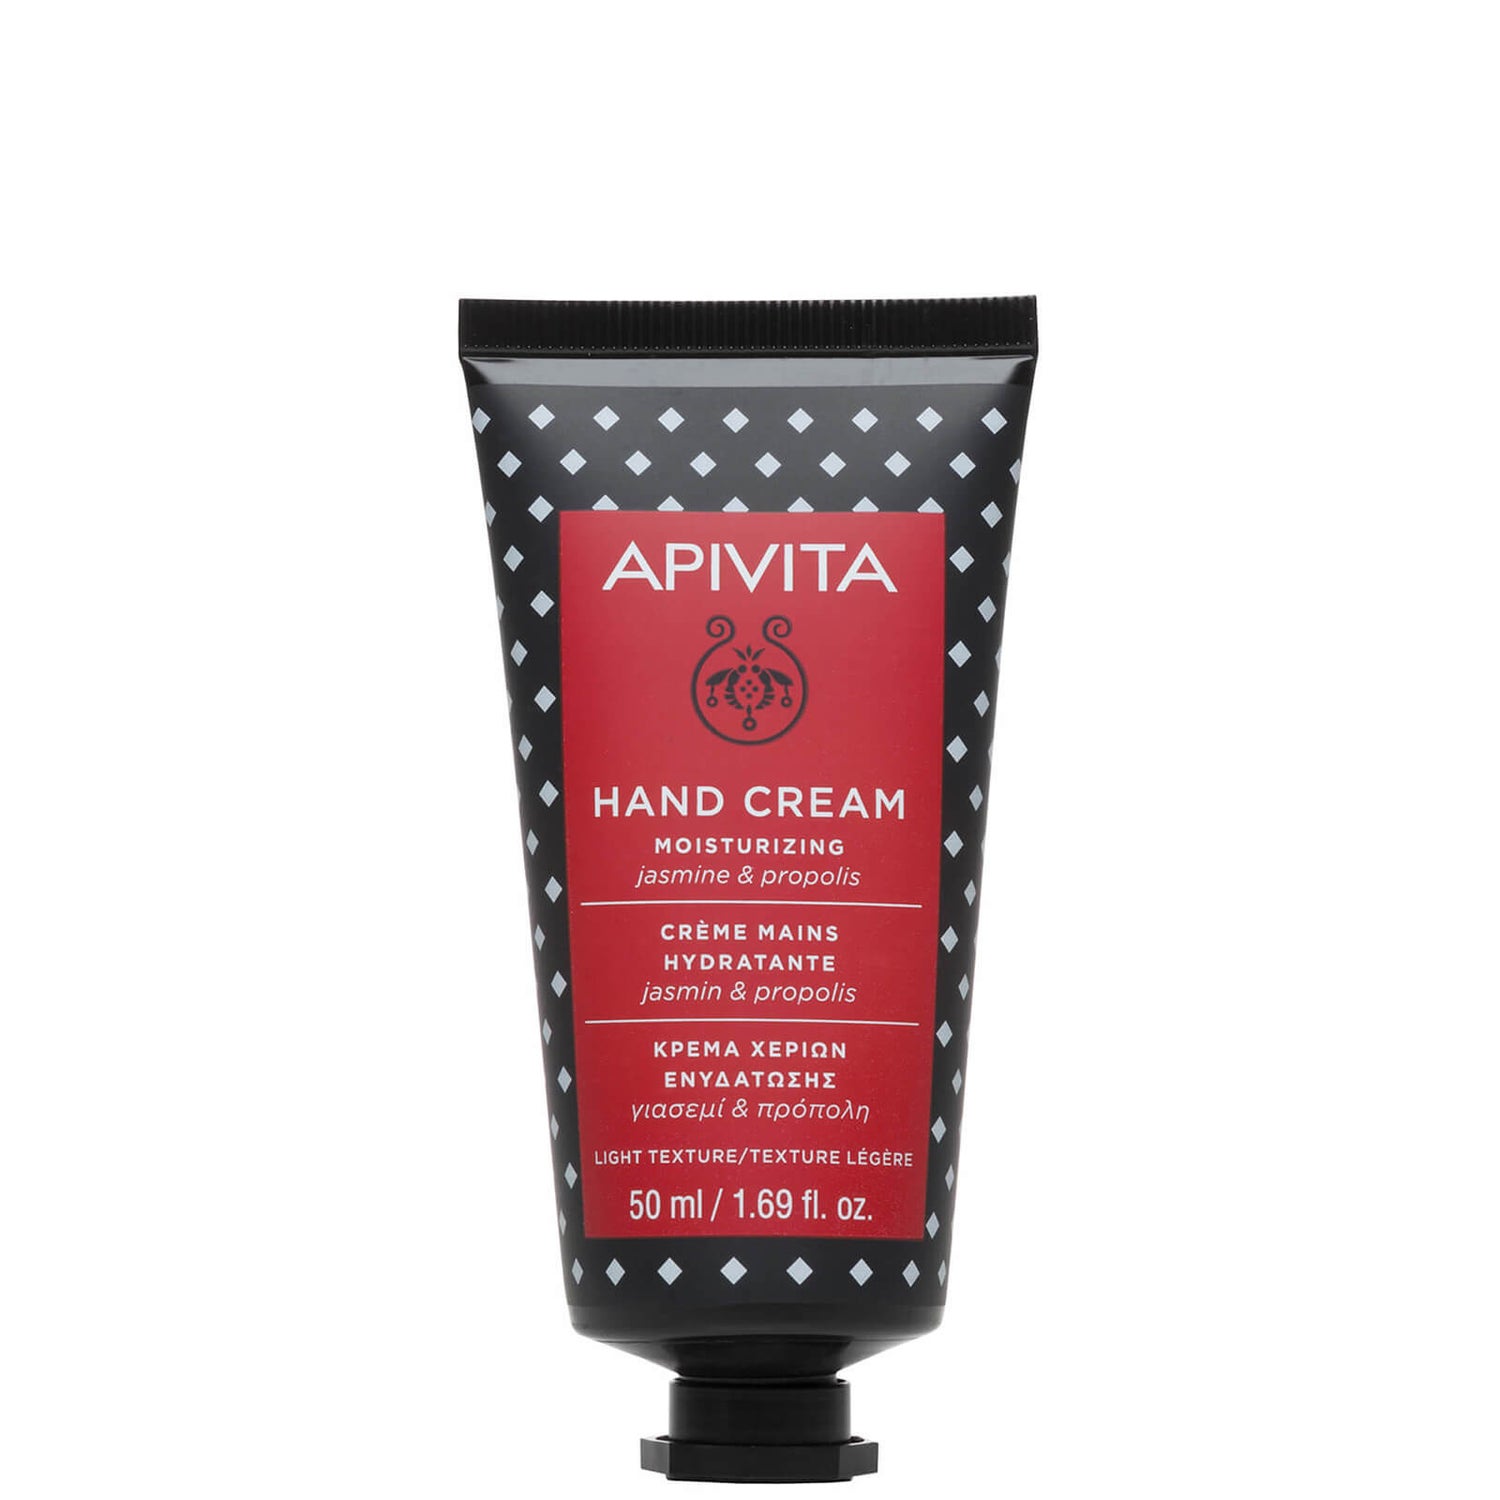 APIVITA Hand Care Moisturizing Hand Cream – Jasmine & Propolis 50 ml